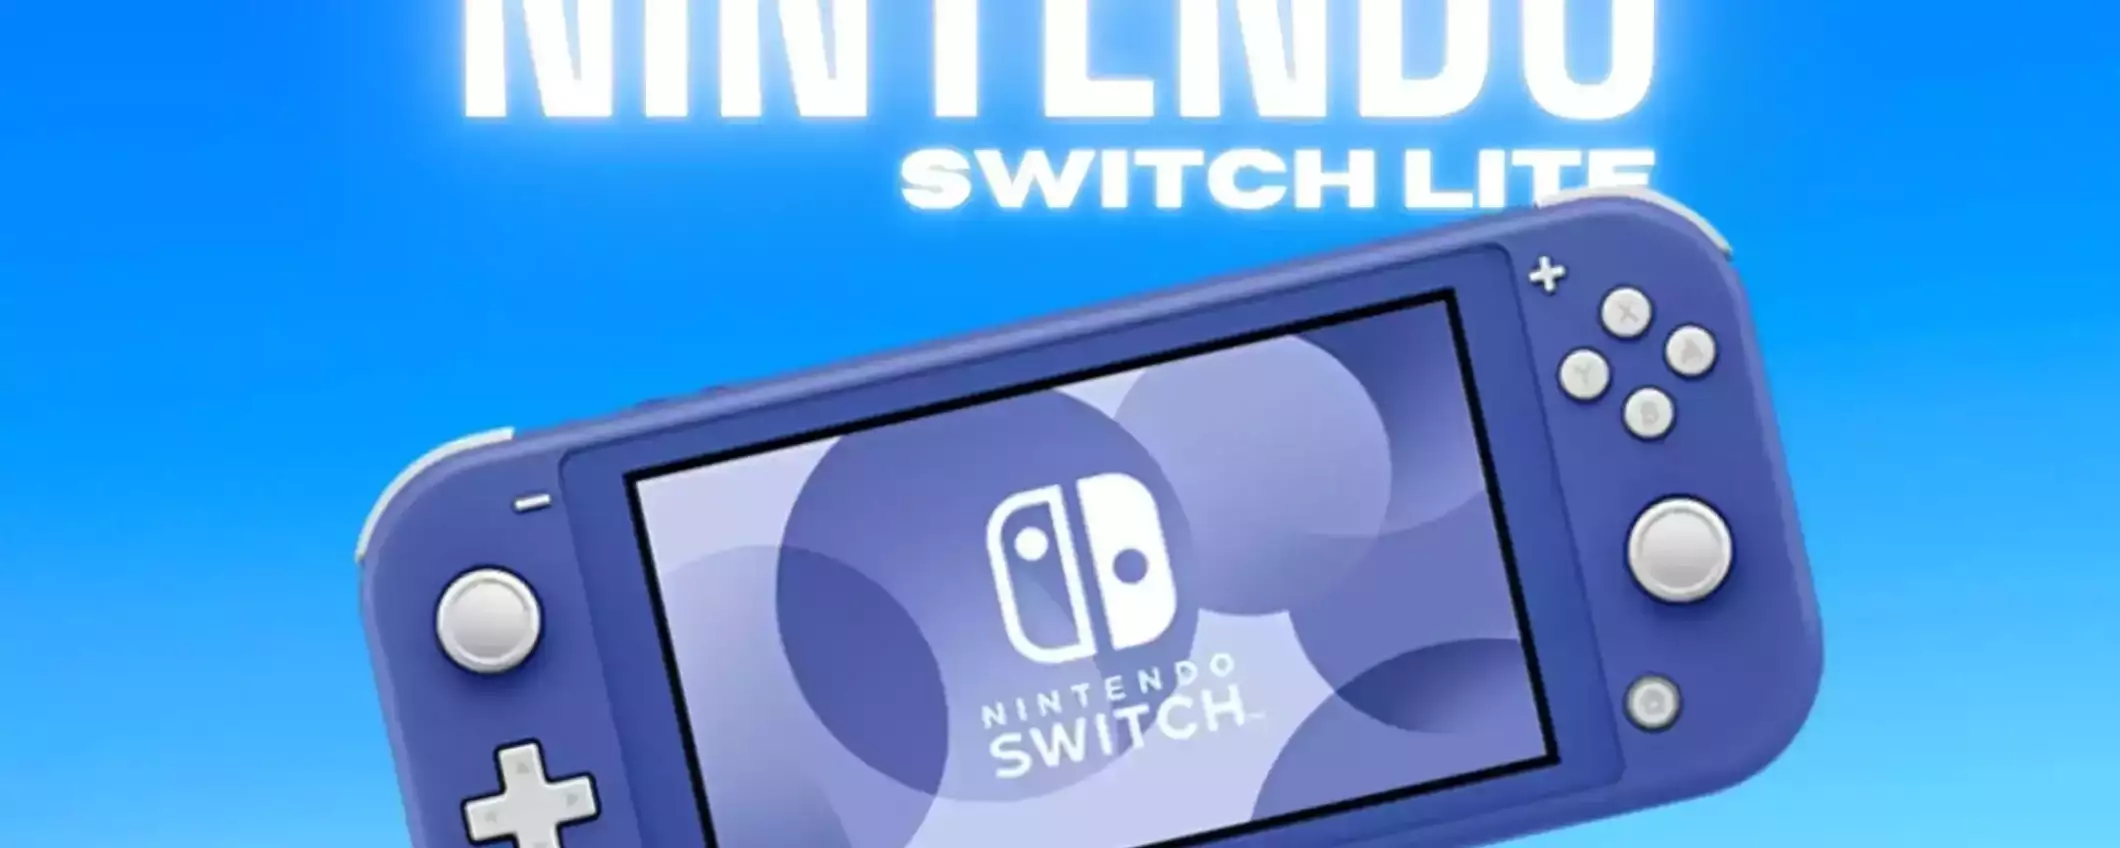 Nintendo Switch Lite: il prezzo della colorazione blu crolla su eBay